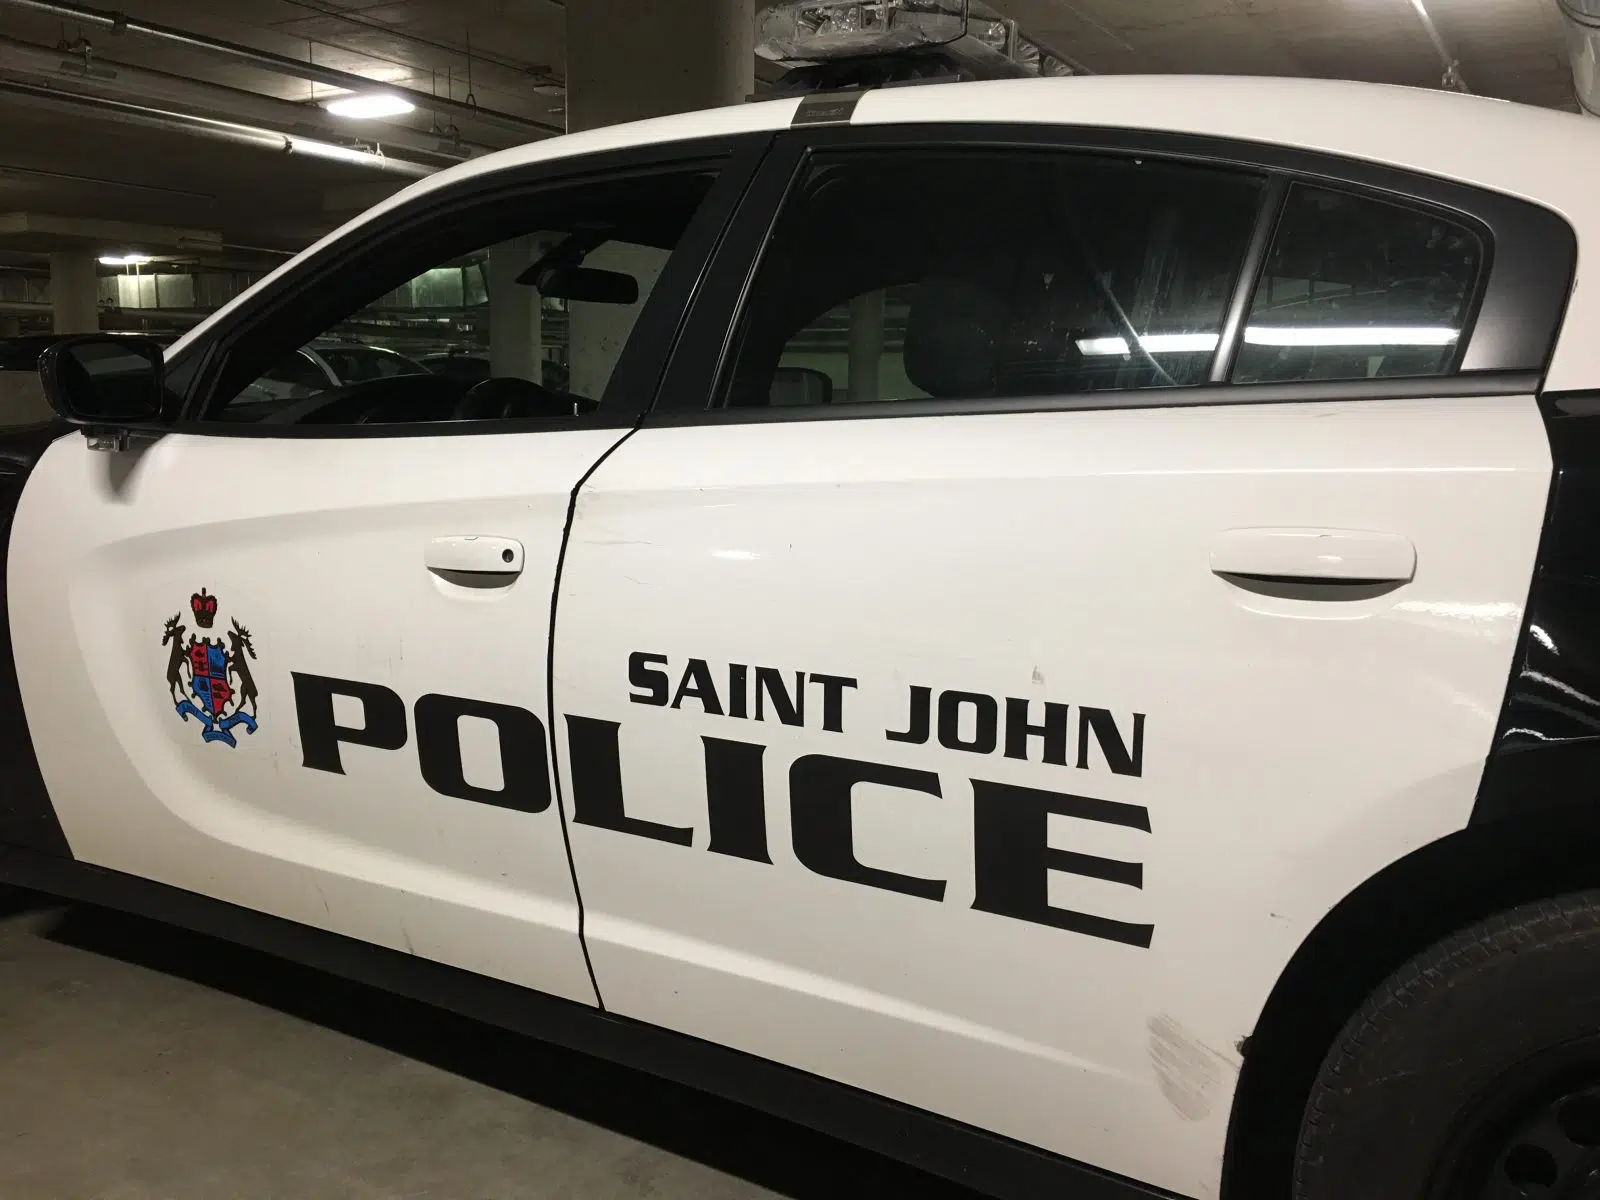 Man arrested with loaded firearm in Saint John